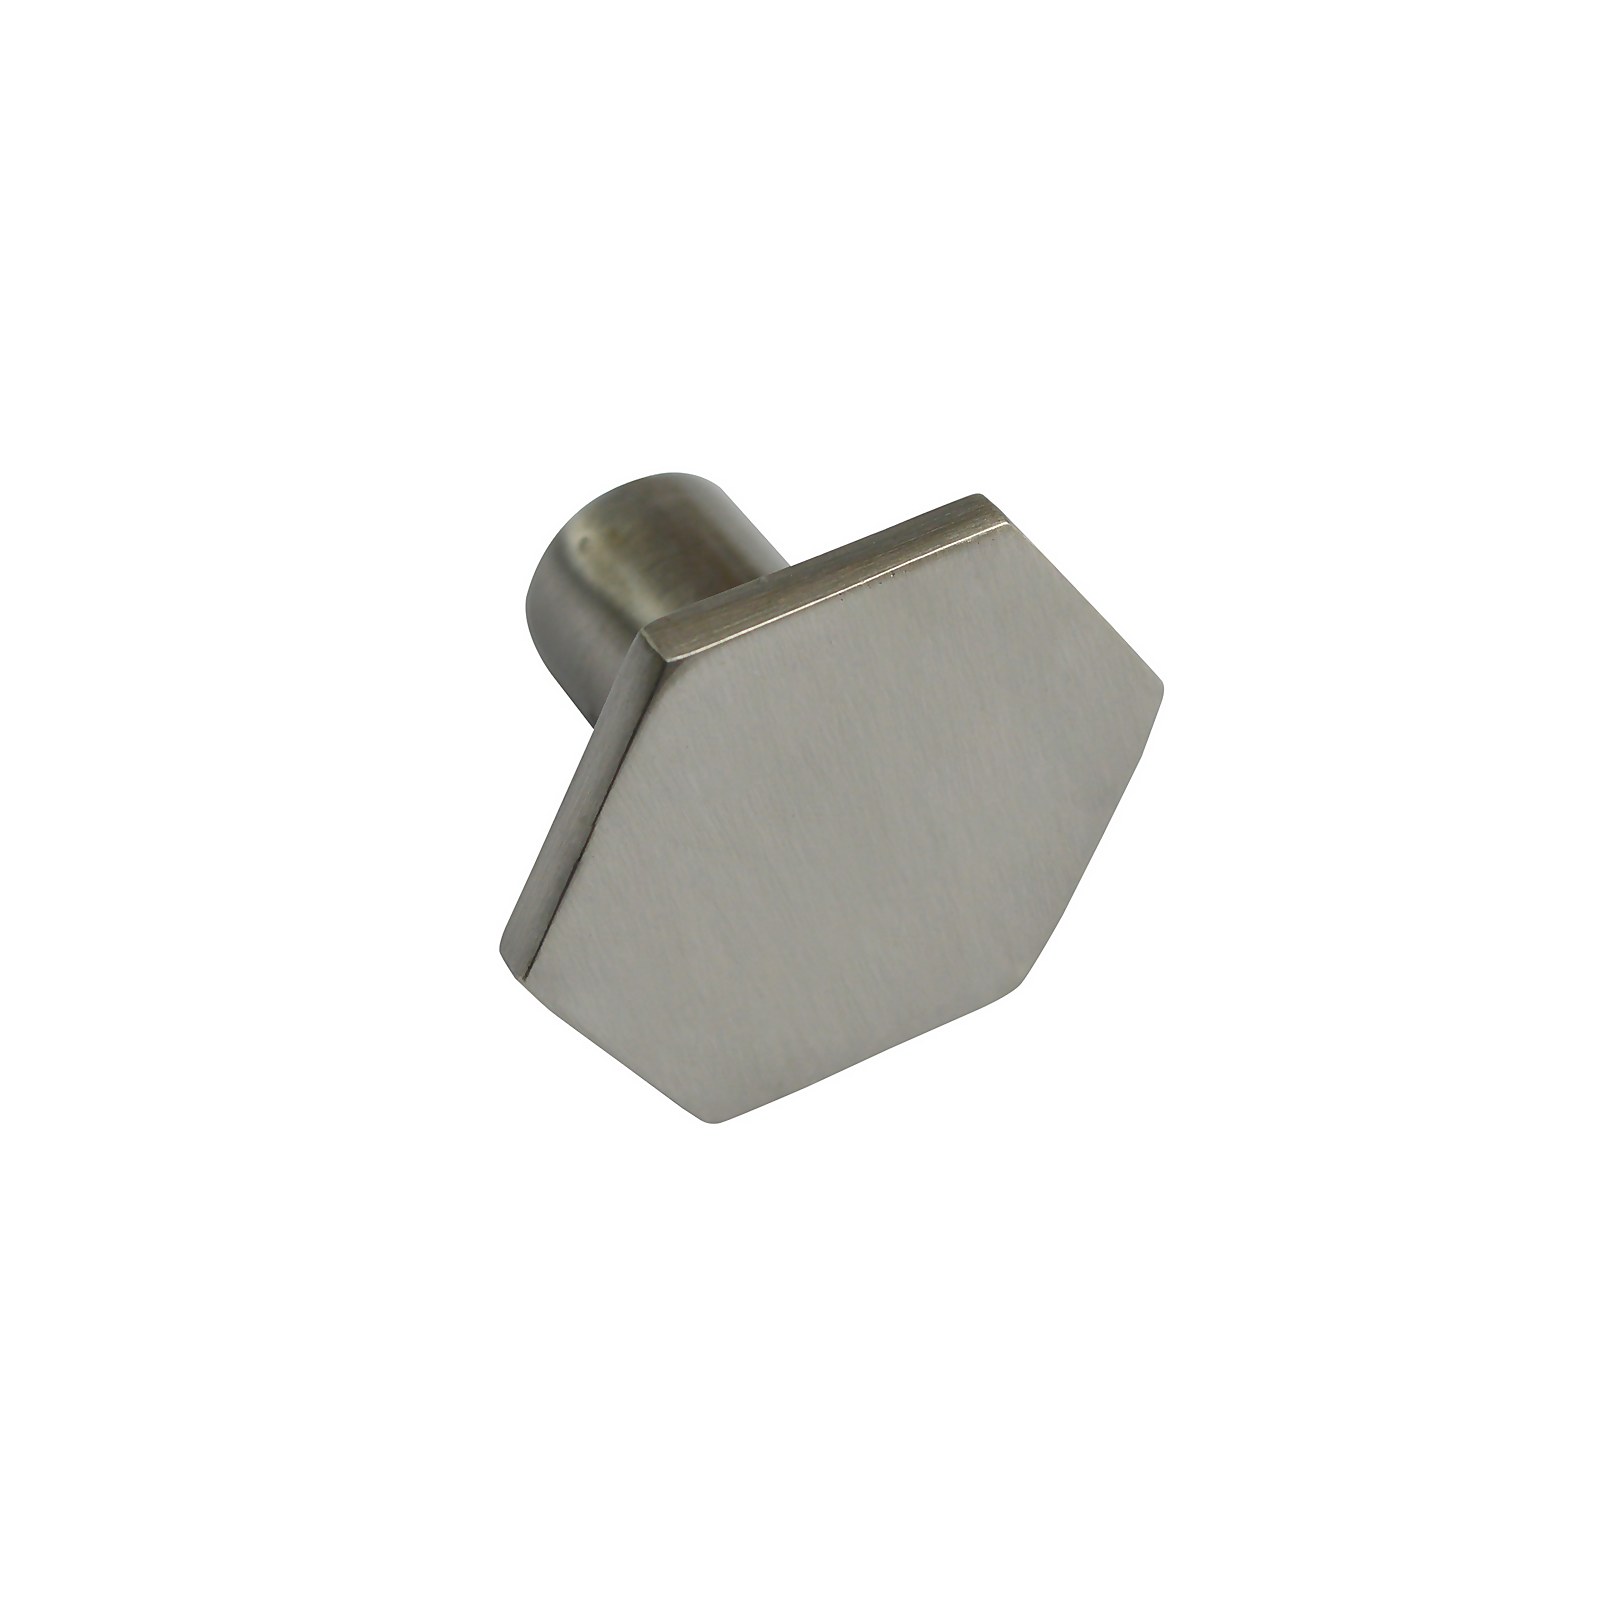 Photo of Havana 88mm Zinc Nickel Hexagonal Knob - 2 Pack